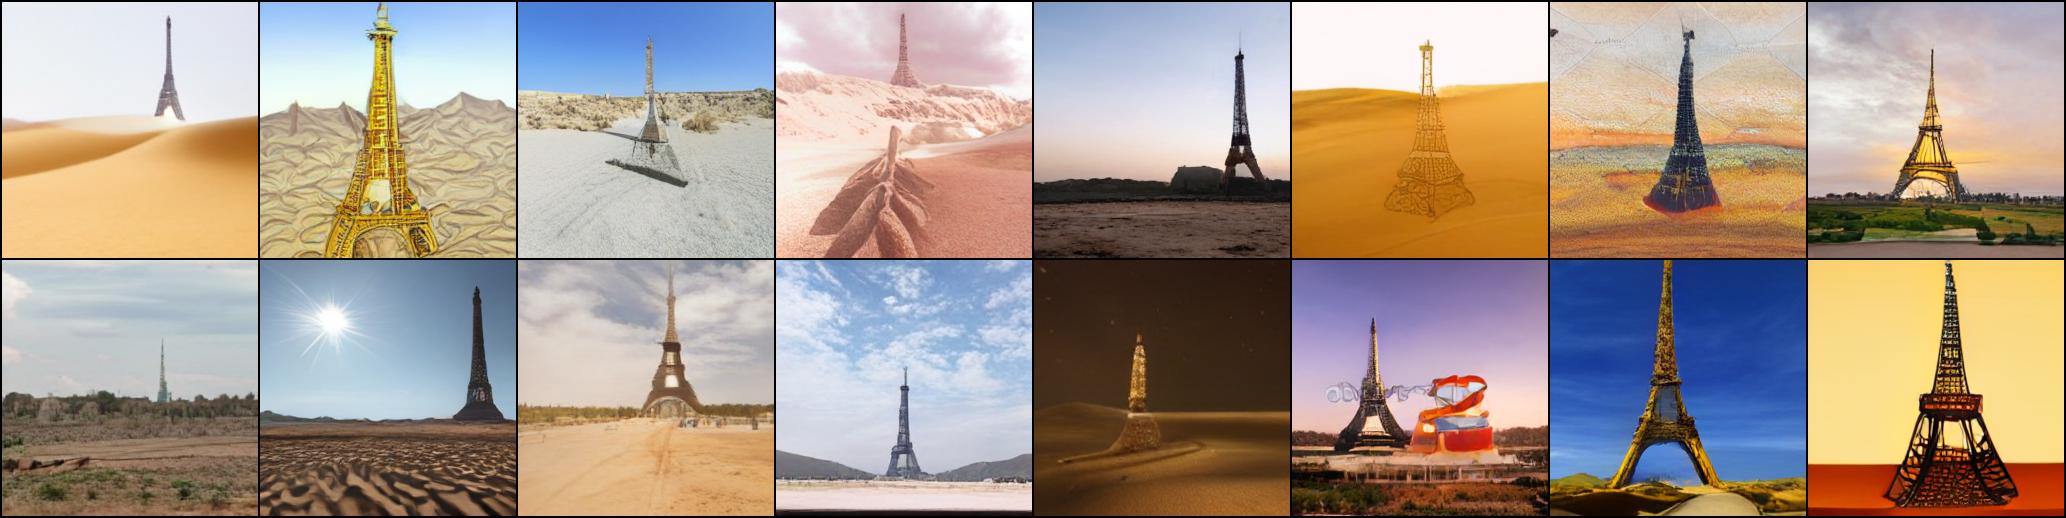 Eiffel tower on a desert._temp_1.0_top_k_1024_top_p_0.95.jpg